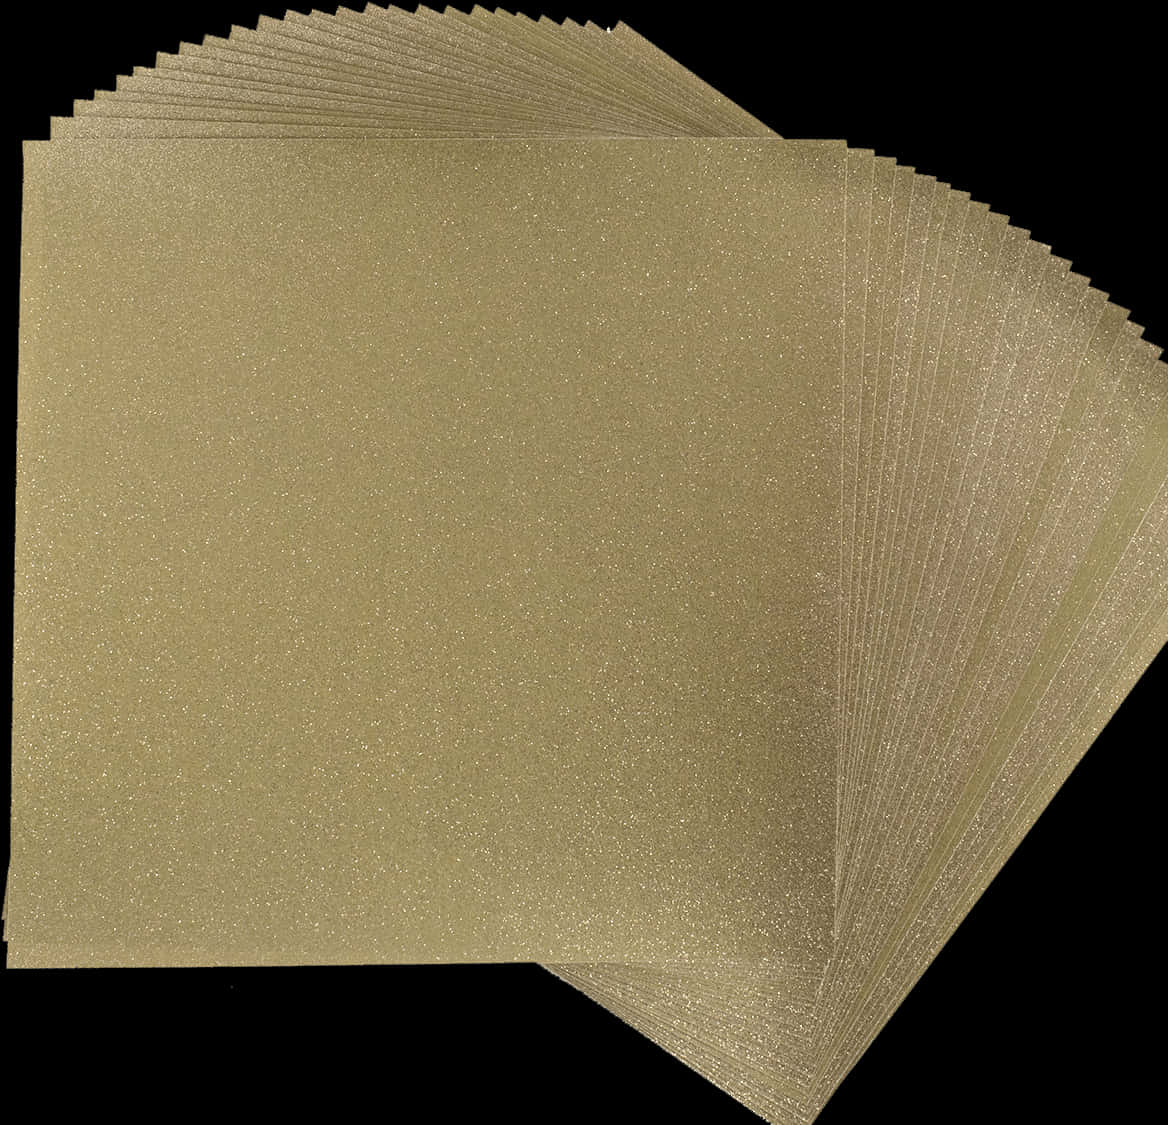 Gold Glitter Paper Texture